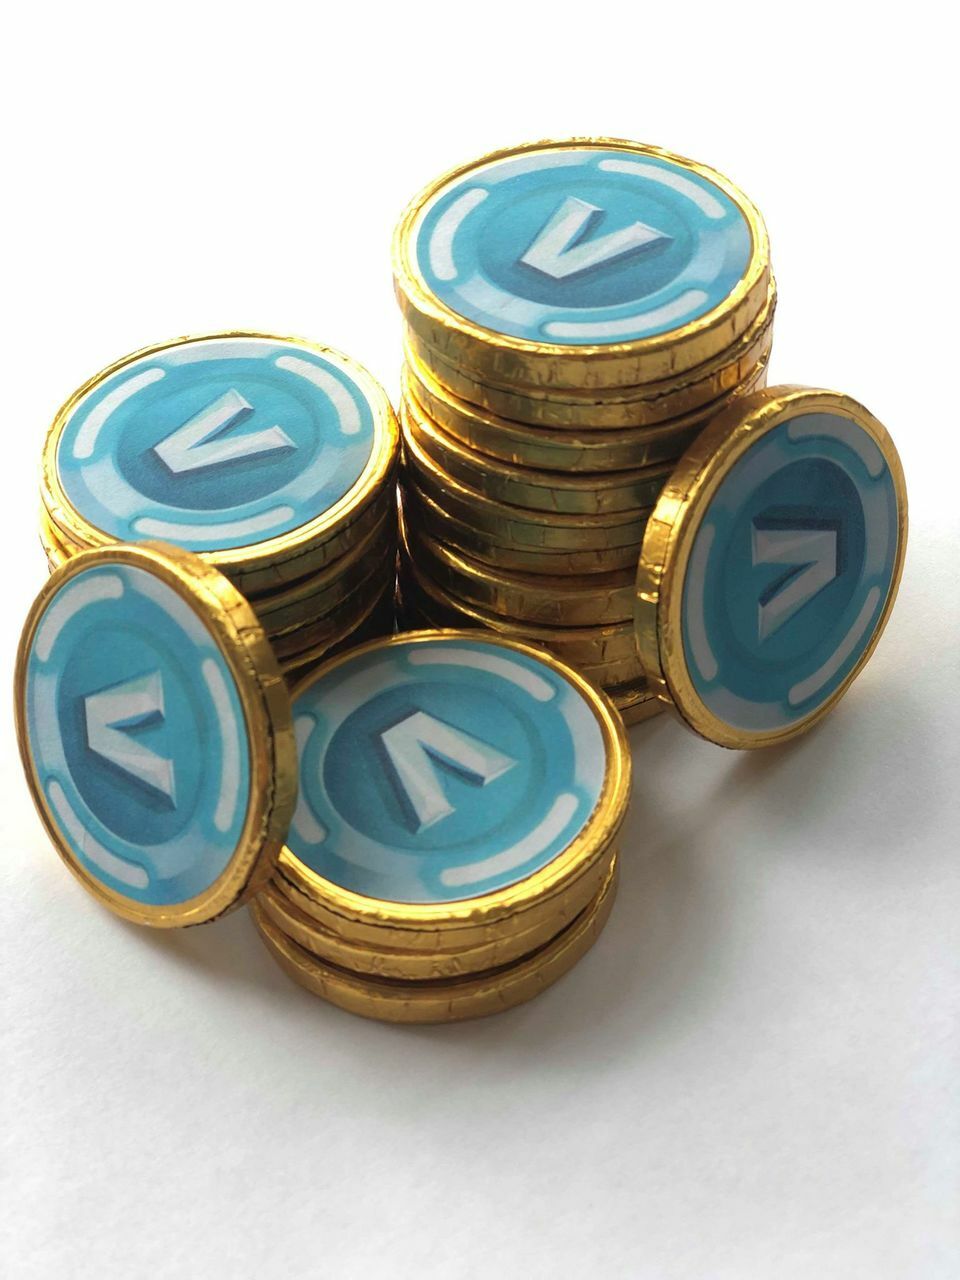 hack shoppee coins